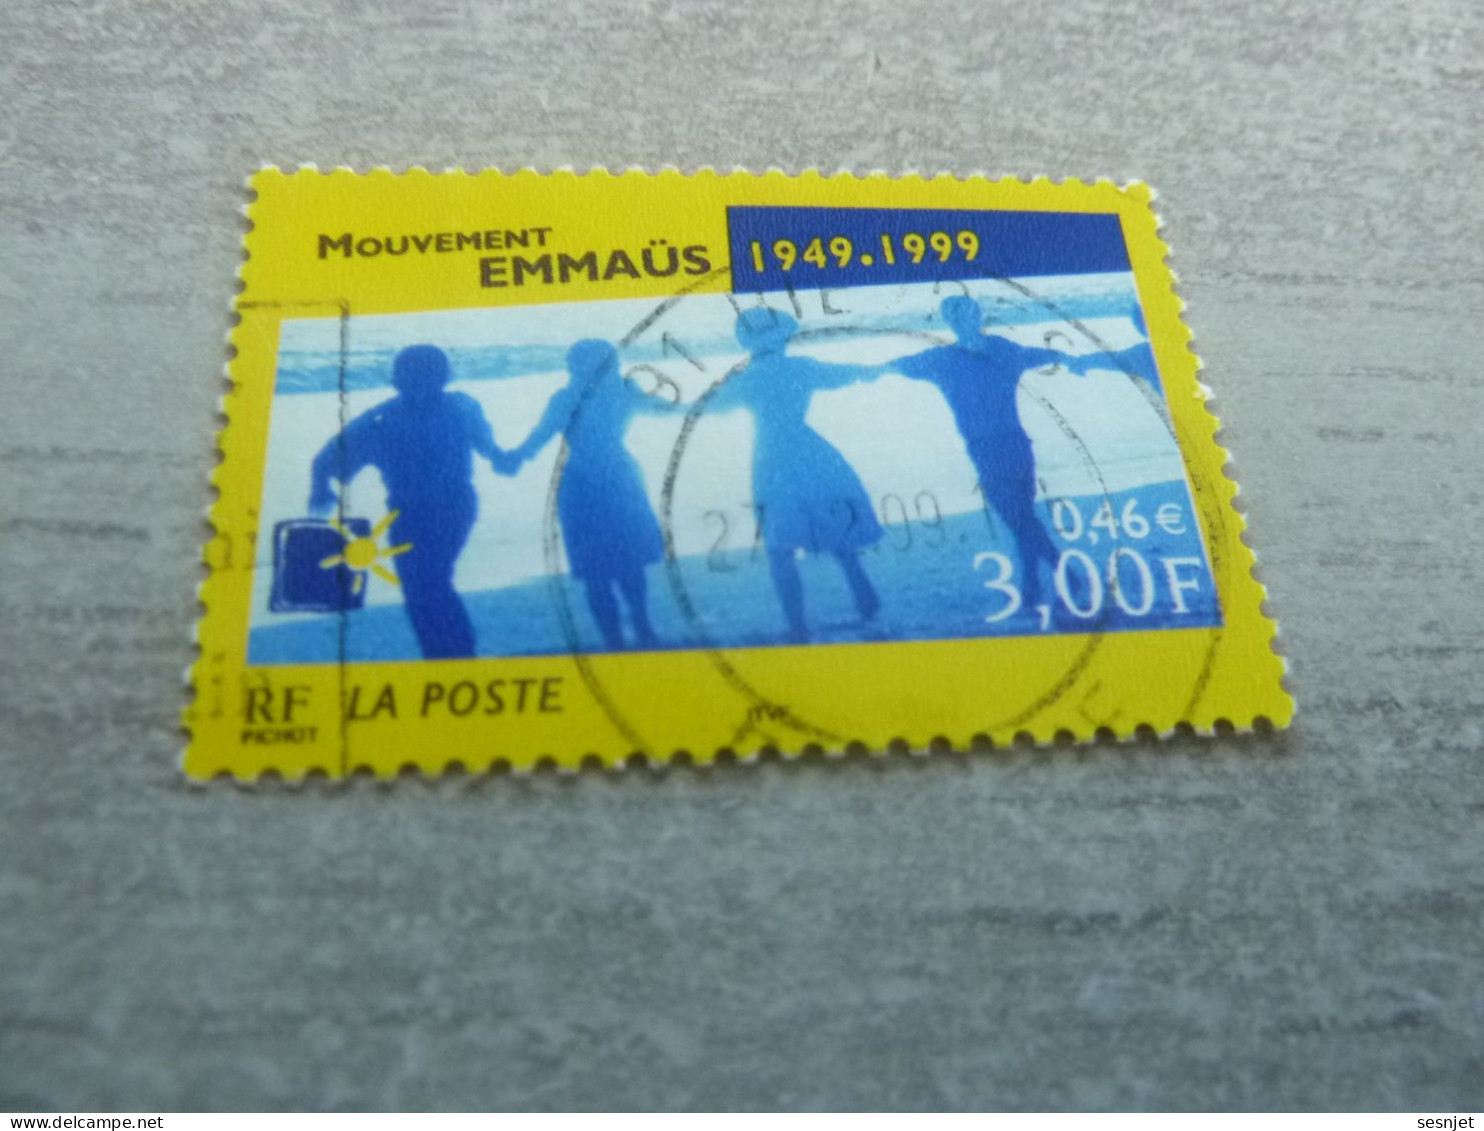 Cinquantenaire Du Mouvement Emmaüs - 3f. (0.46 €) - Yt 3282 - Multicolore - Oblitéré - Année 1999 - - Used Stamps